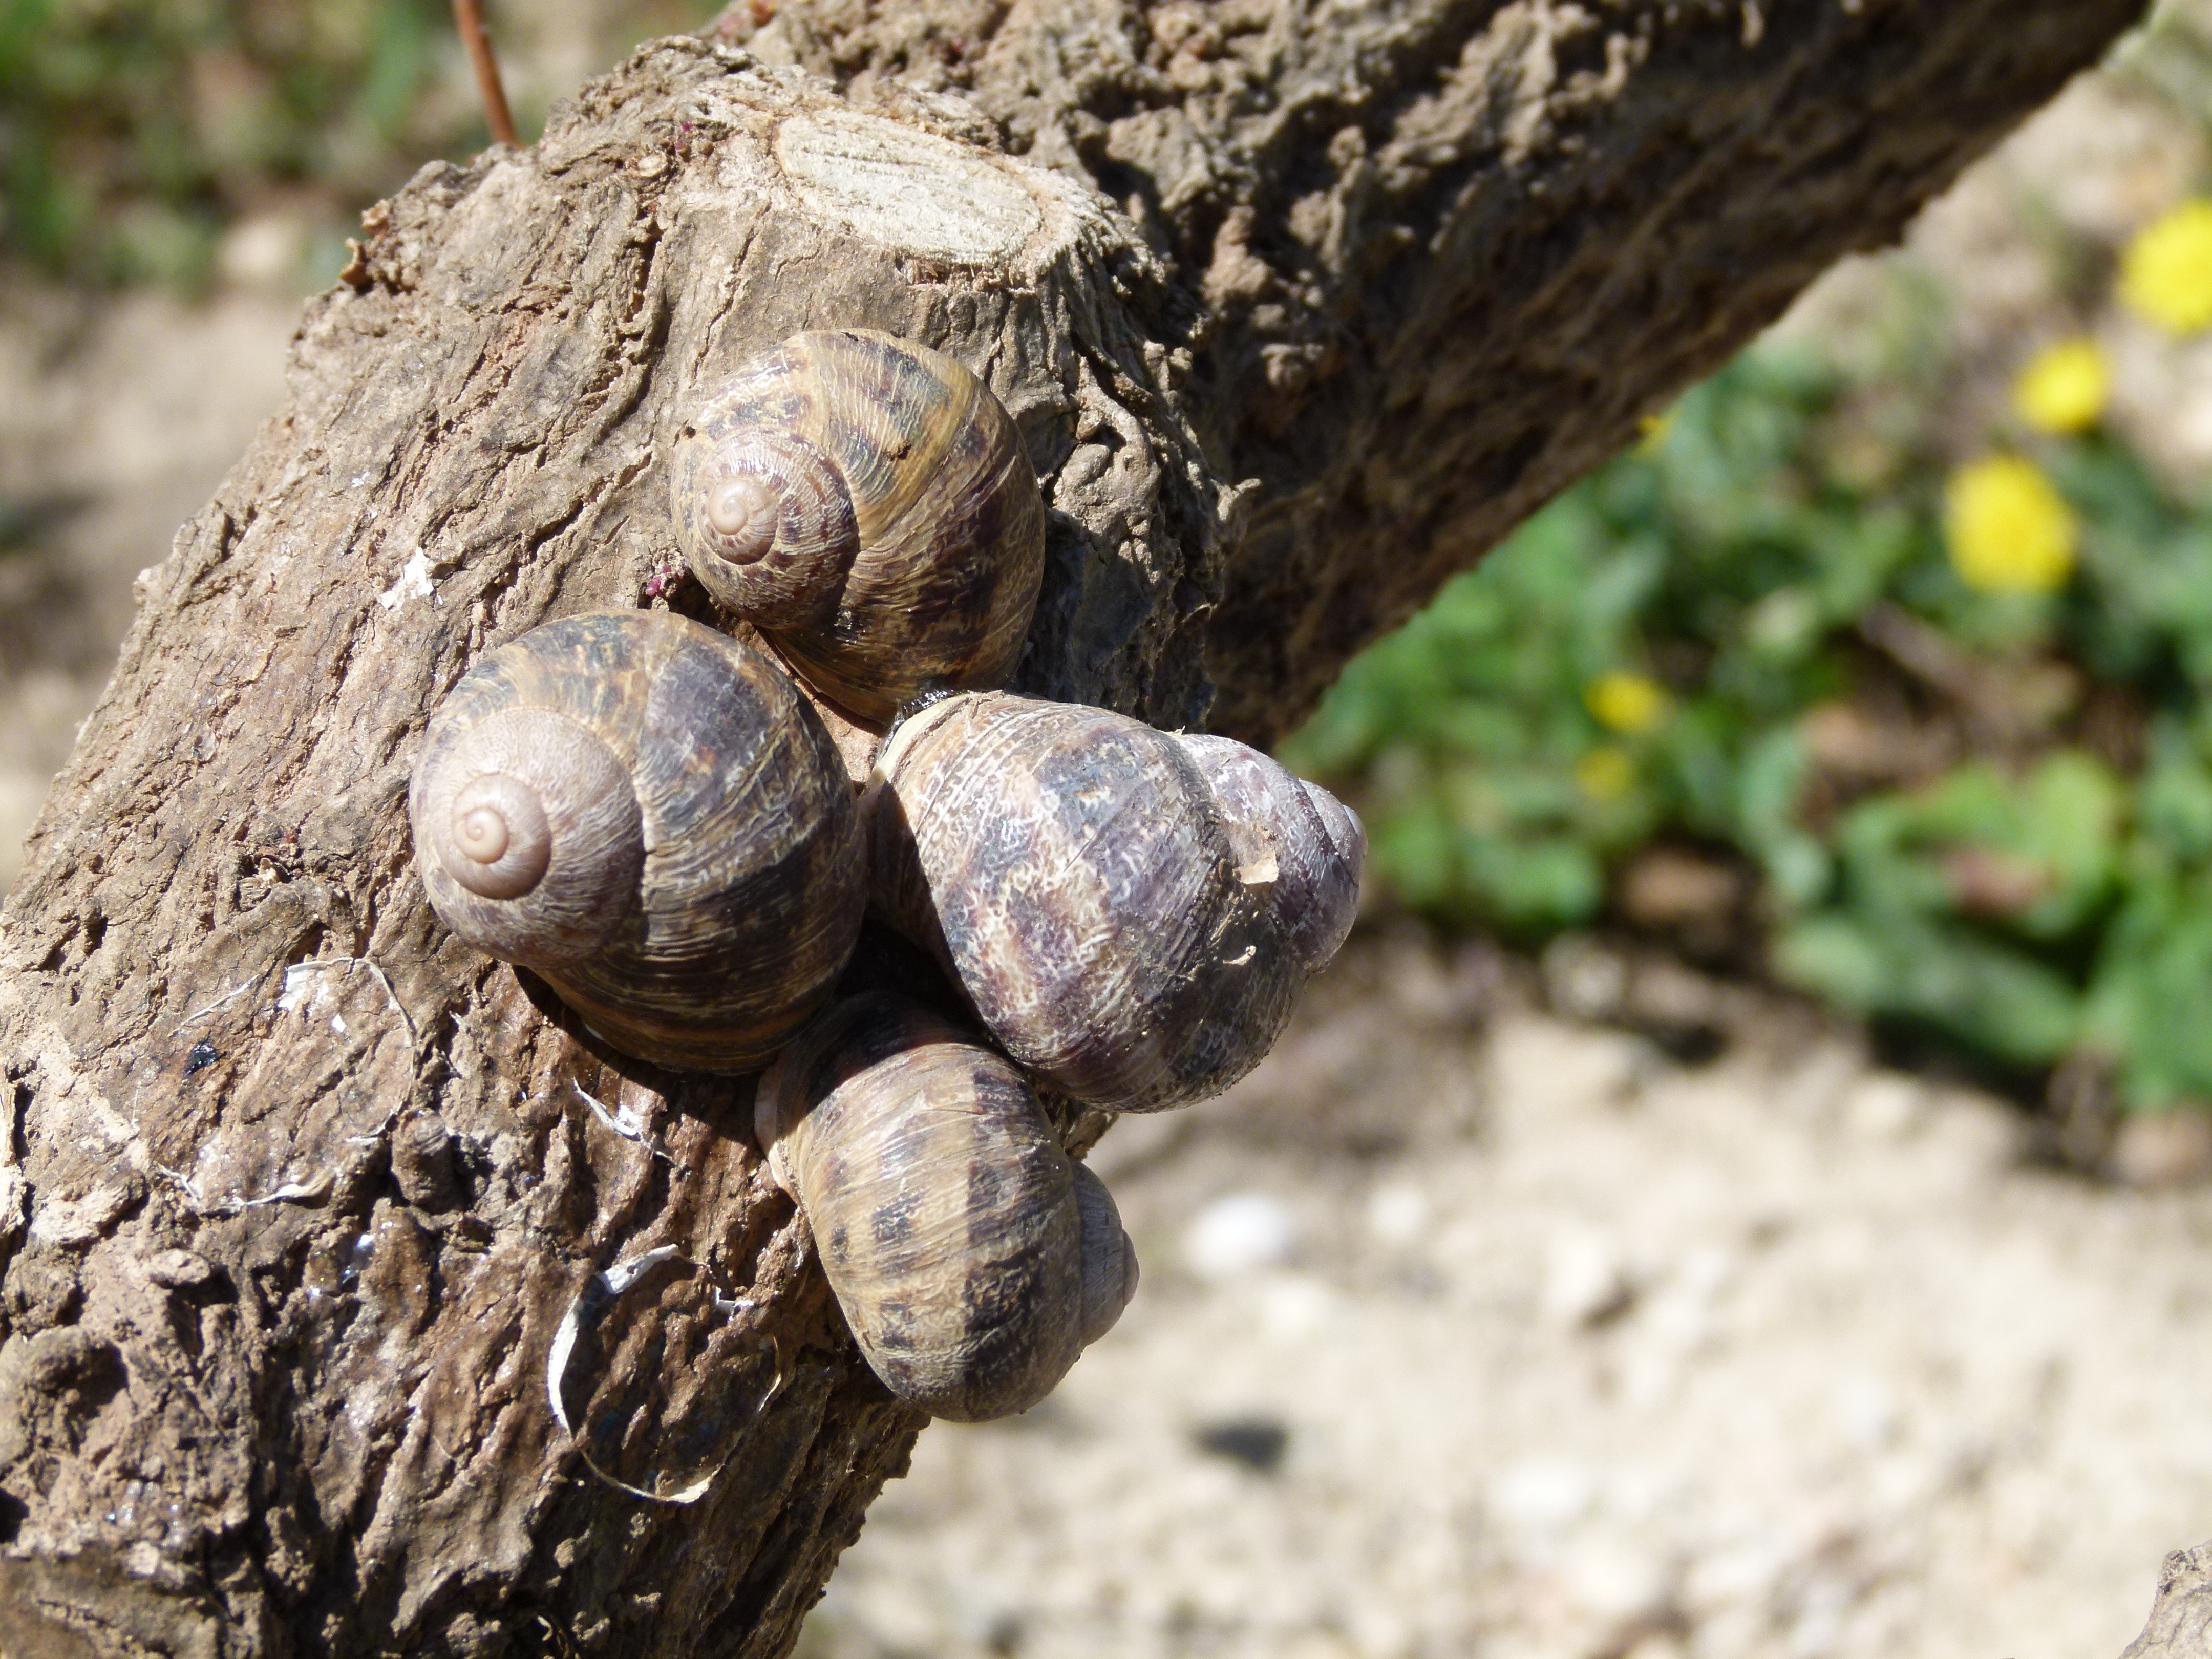 4 snails